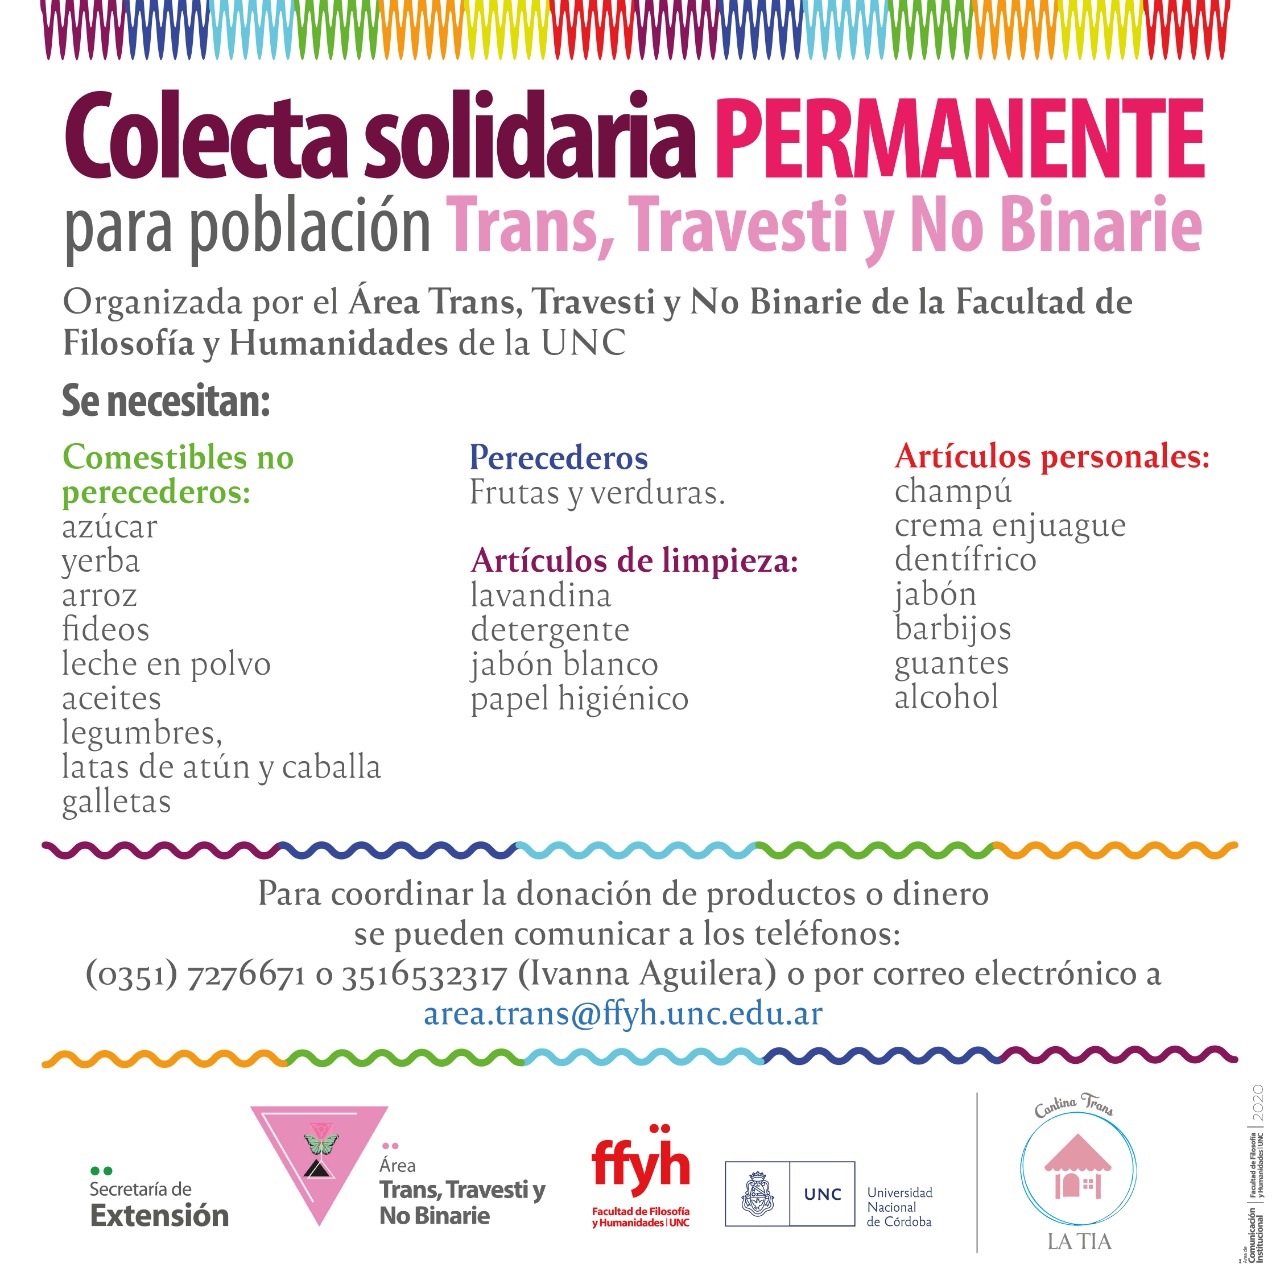 Colecta solidaria permanente para población trans, travesti y no binarie de Córdoba